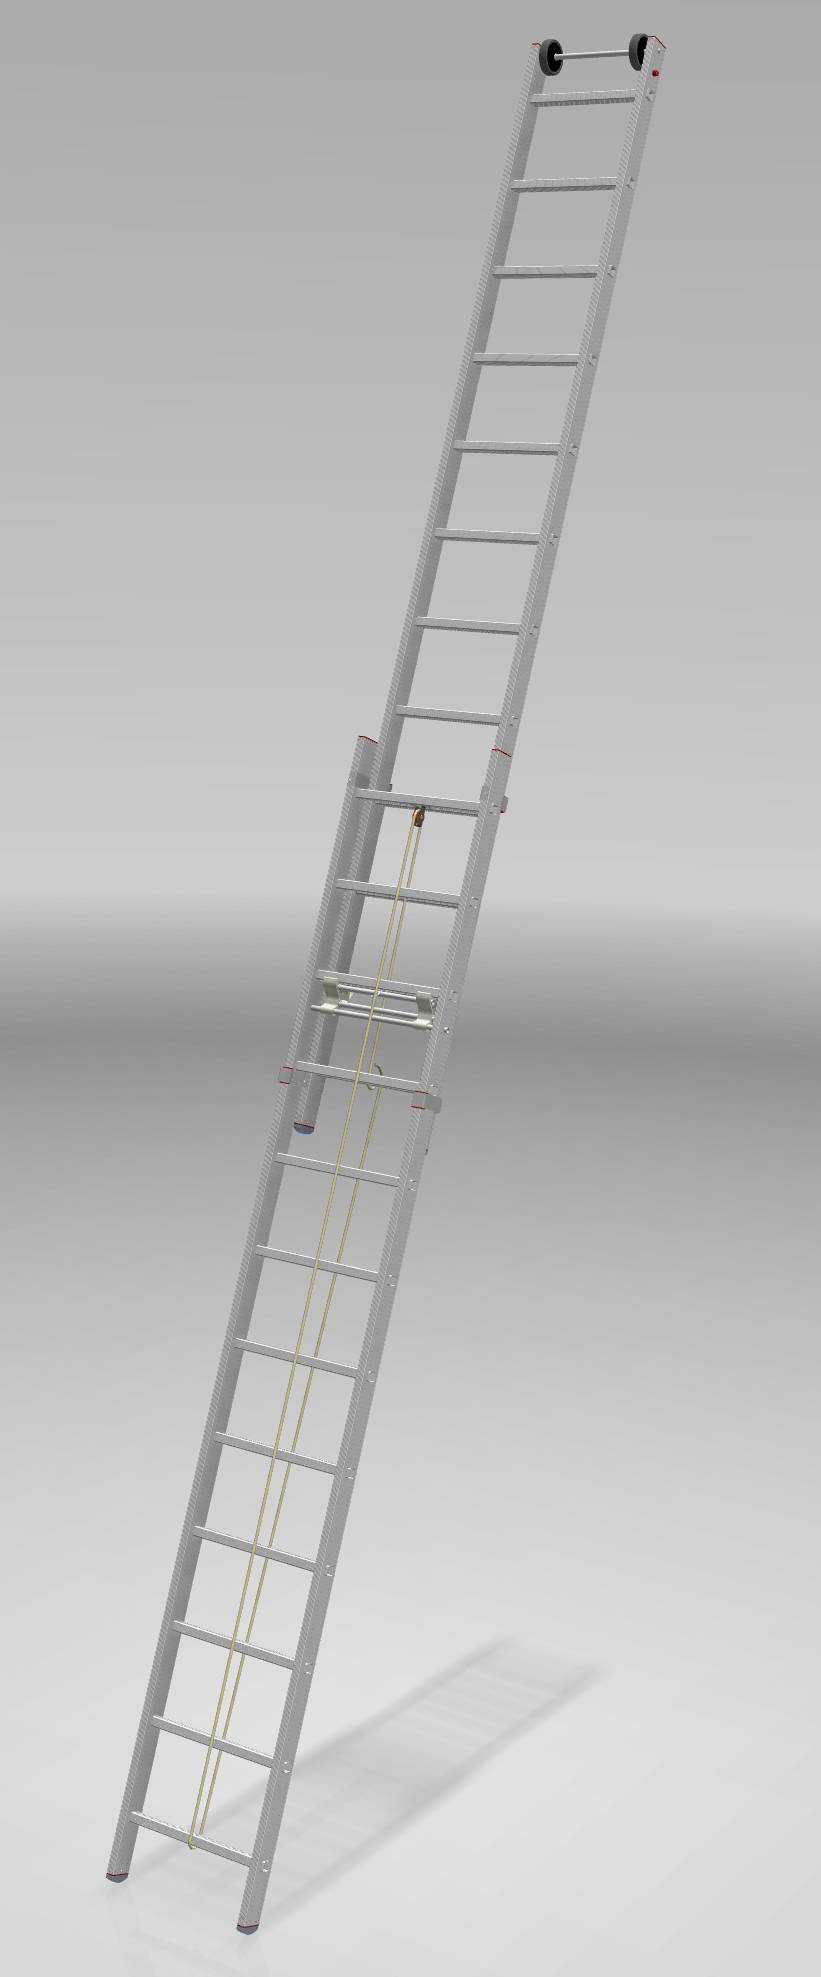 Индустриальная алюминиевая двухсекционная тросовая лестница NV5240 артикул 5240212